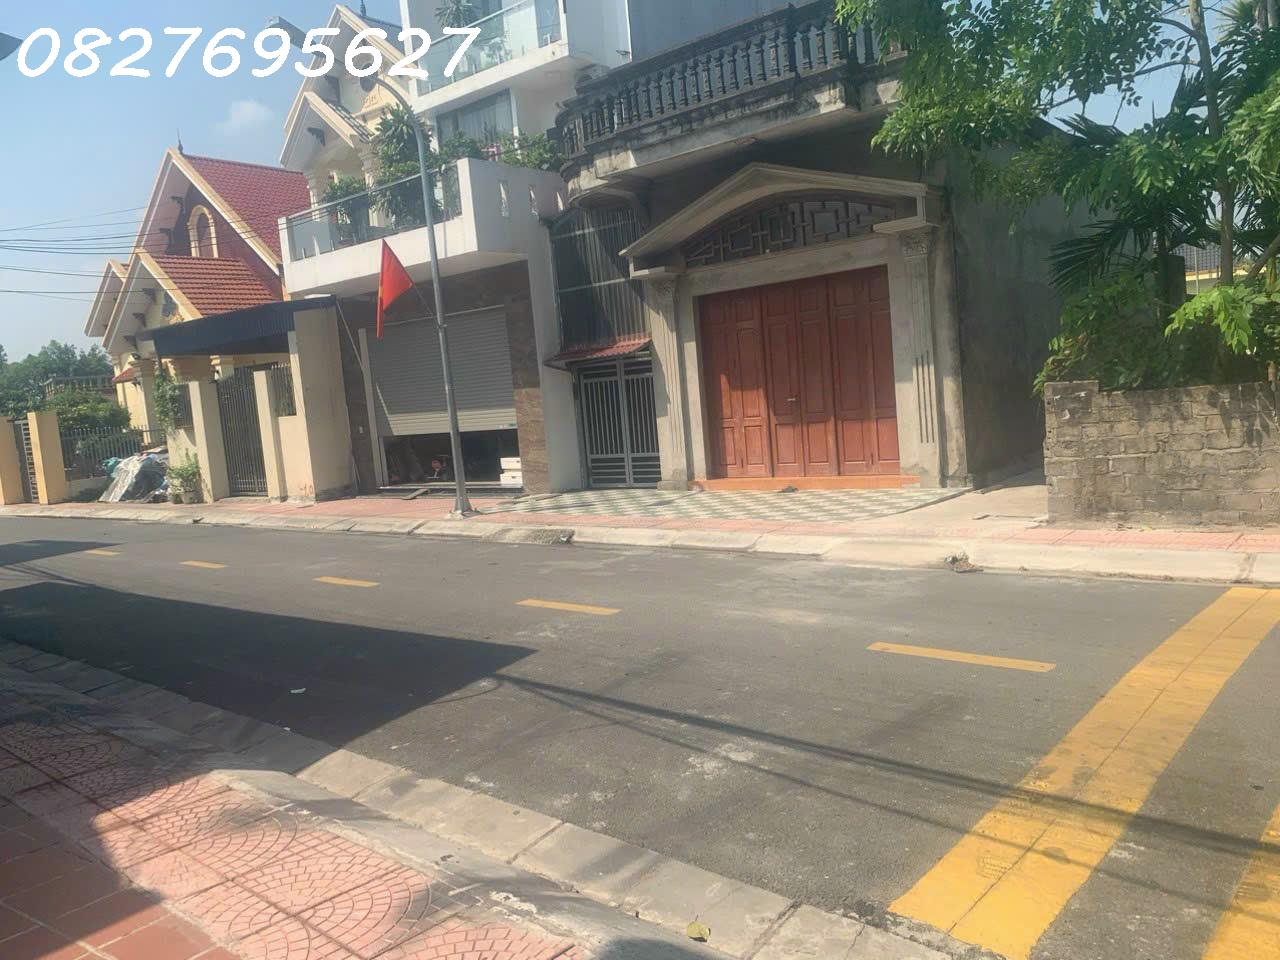 Chuyển nhượng nhà mặt đường tại thôn Kiều Đông, Hồng Thái, An Dương - Hiepphung 2